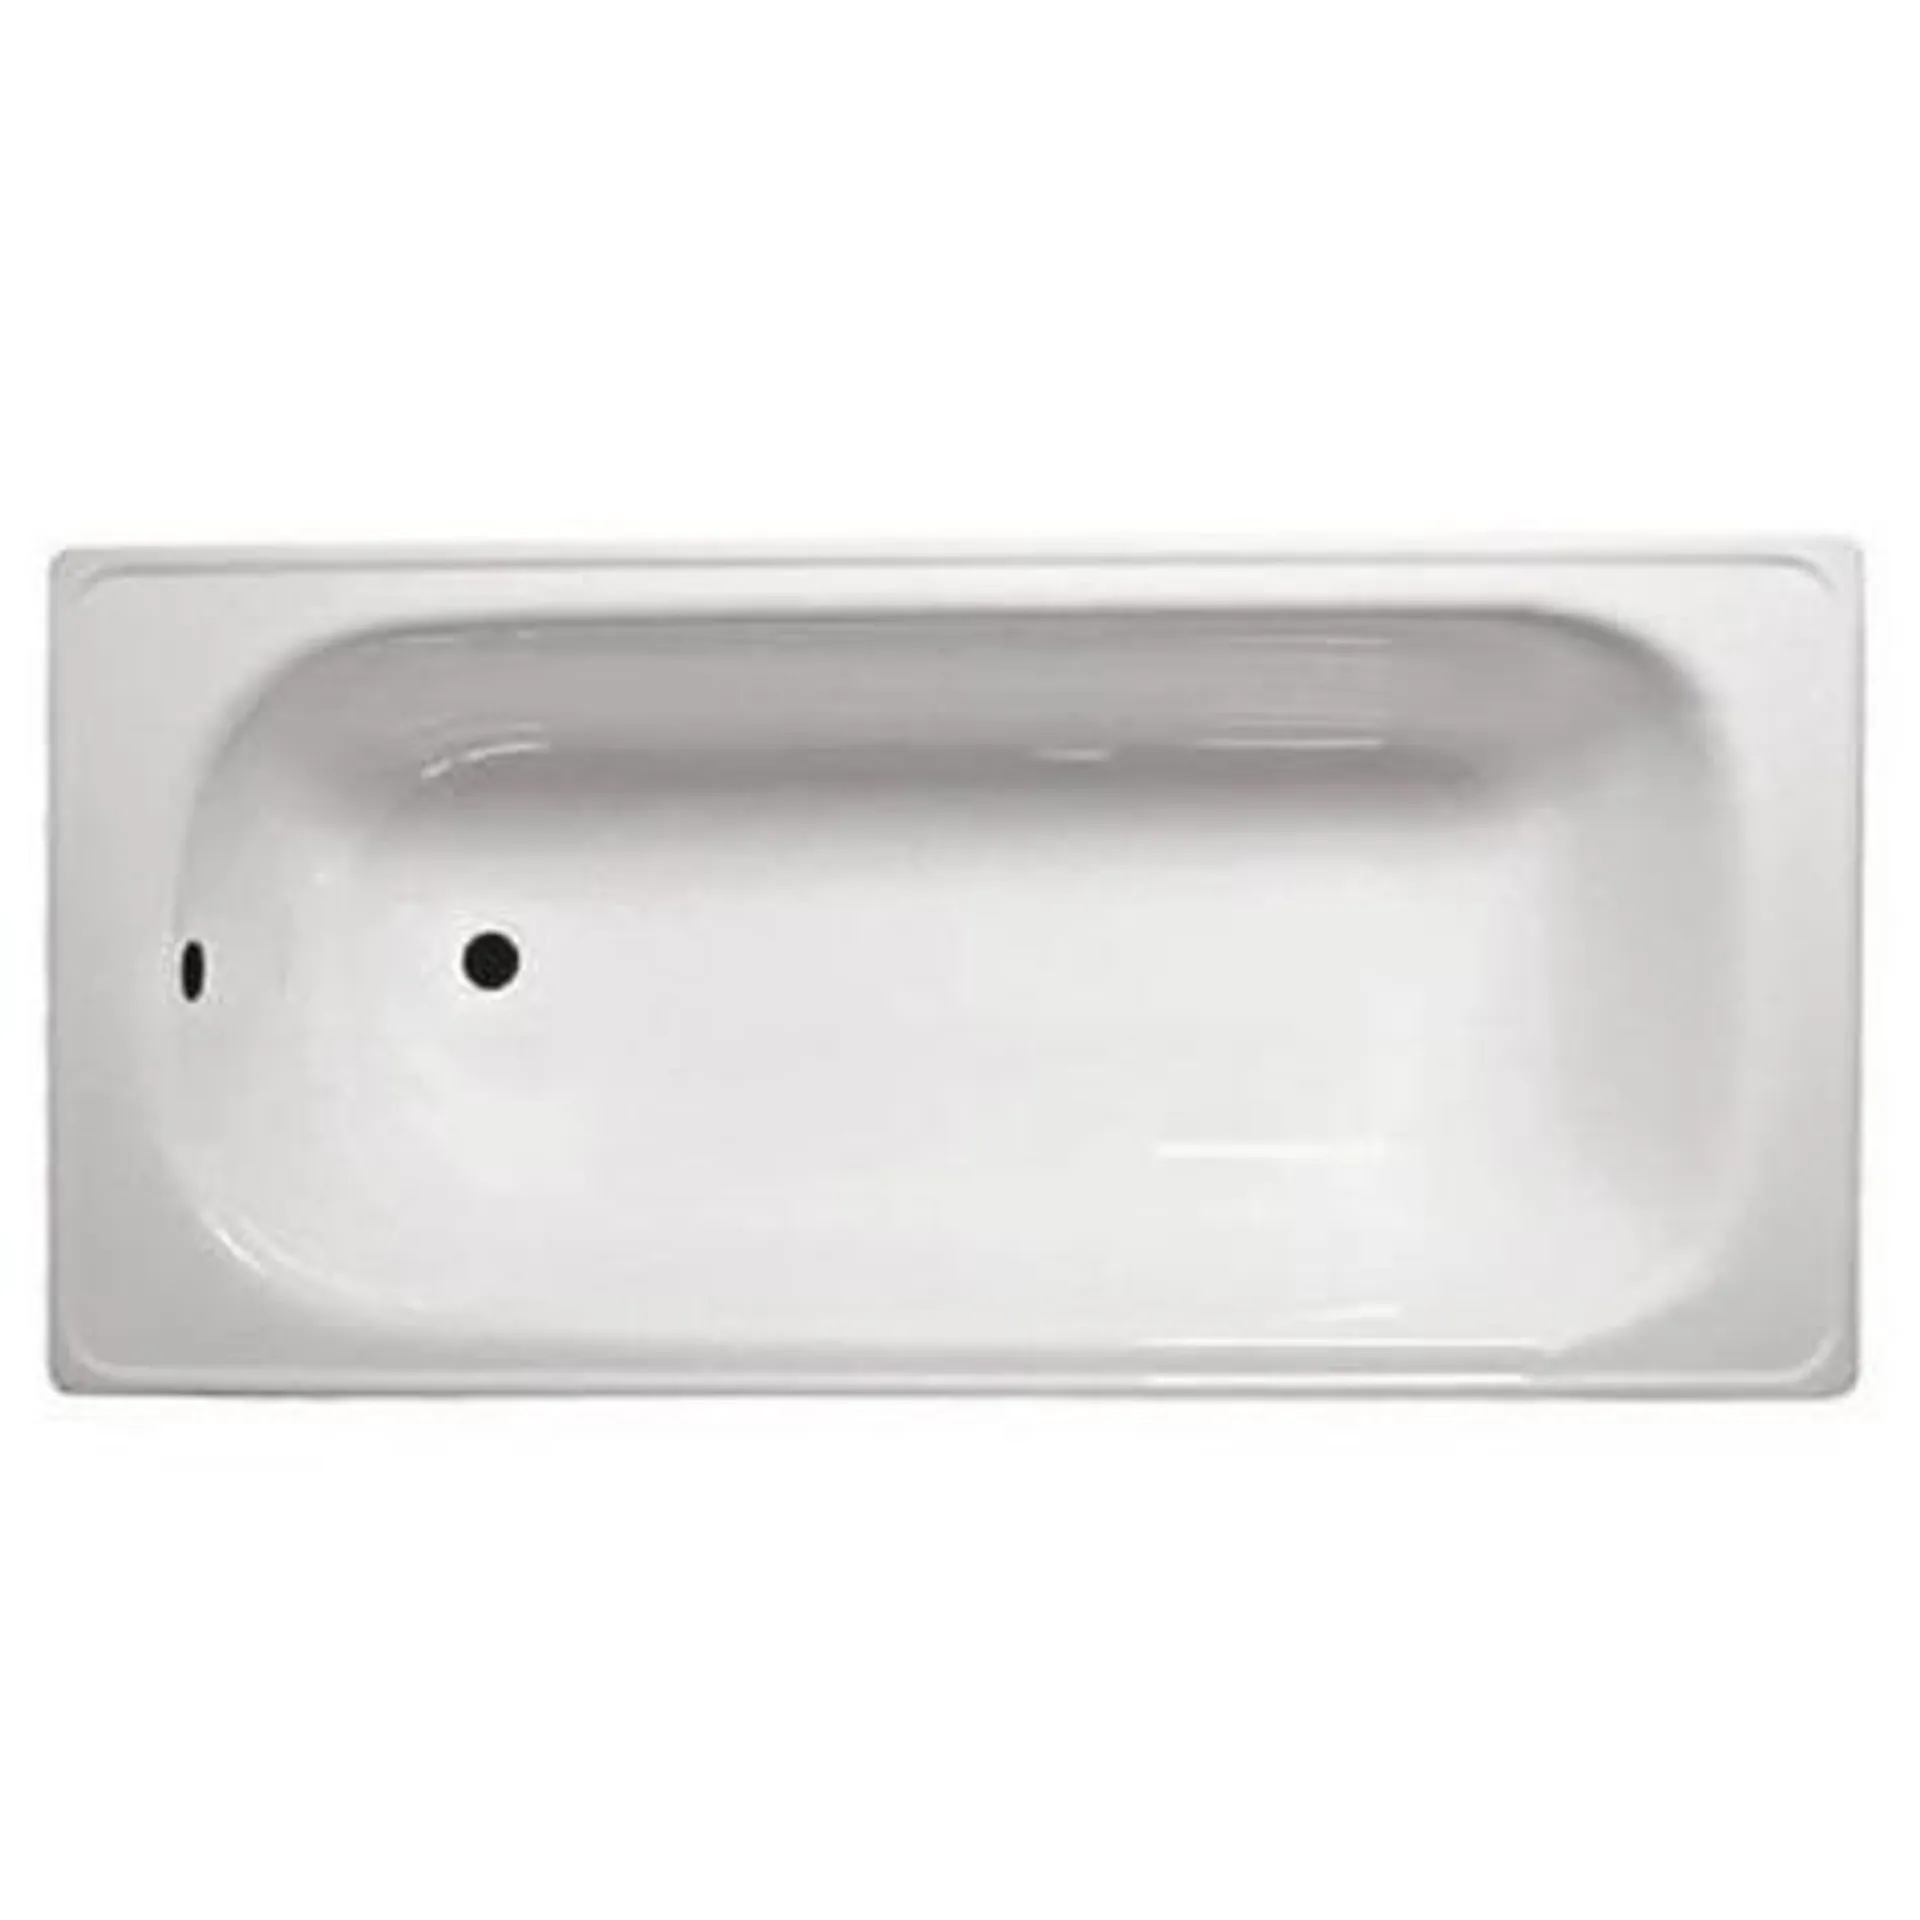 Tina de baño blanca 120x70 cm